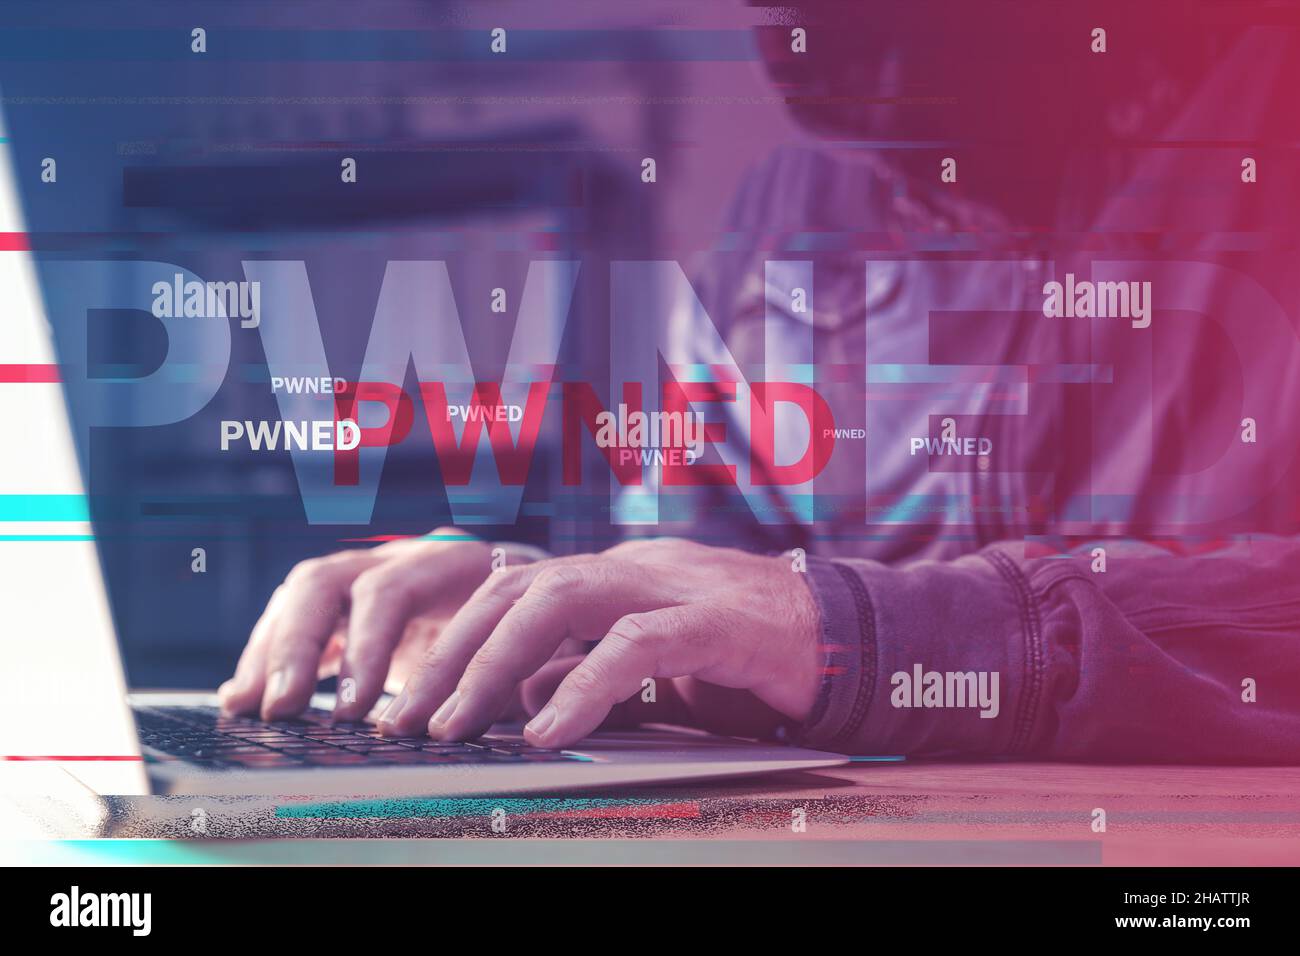 Computer pwned, hacker che utilizza il laptop per alimentare i dispositivi collegati a una rete, immagine migliorata digitalmente con messa a fuoco selettiva Foto Stock